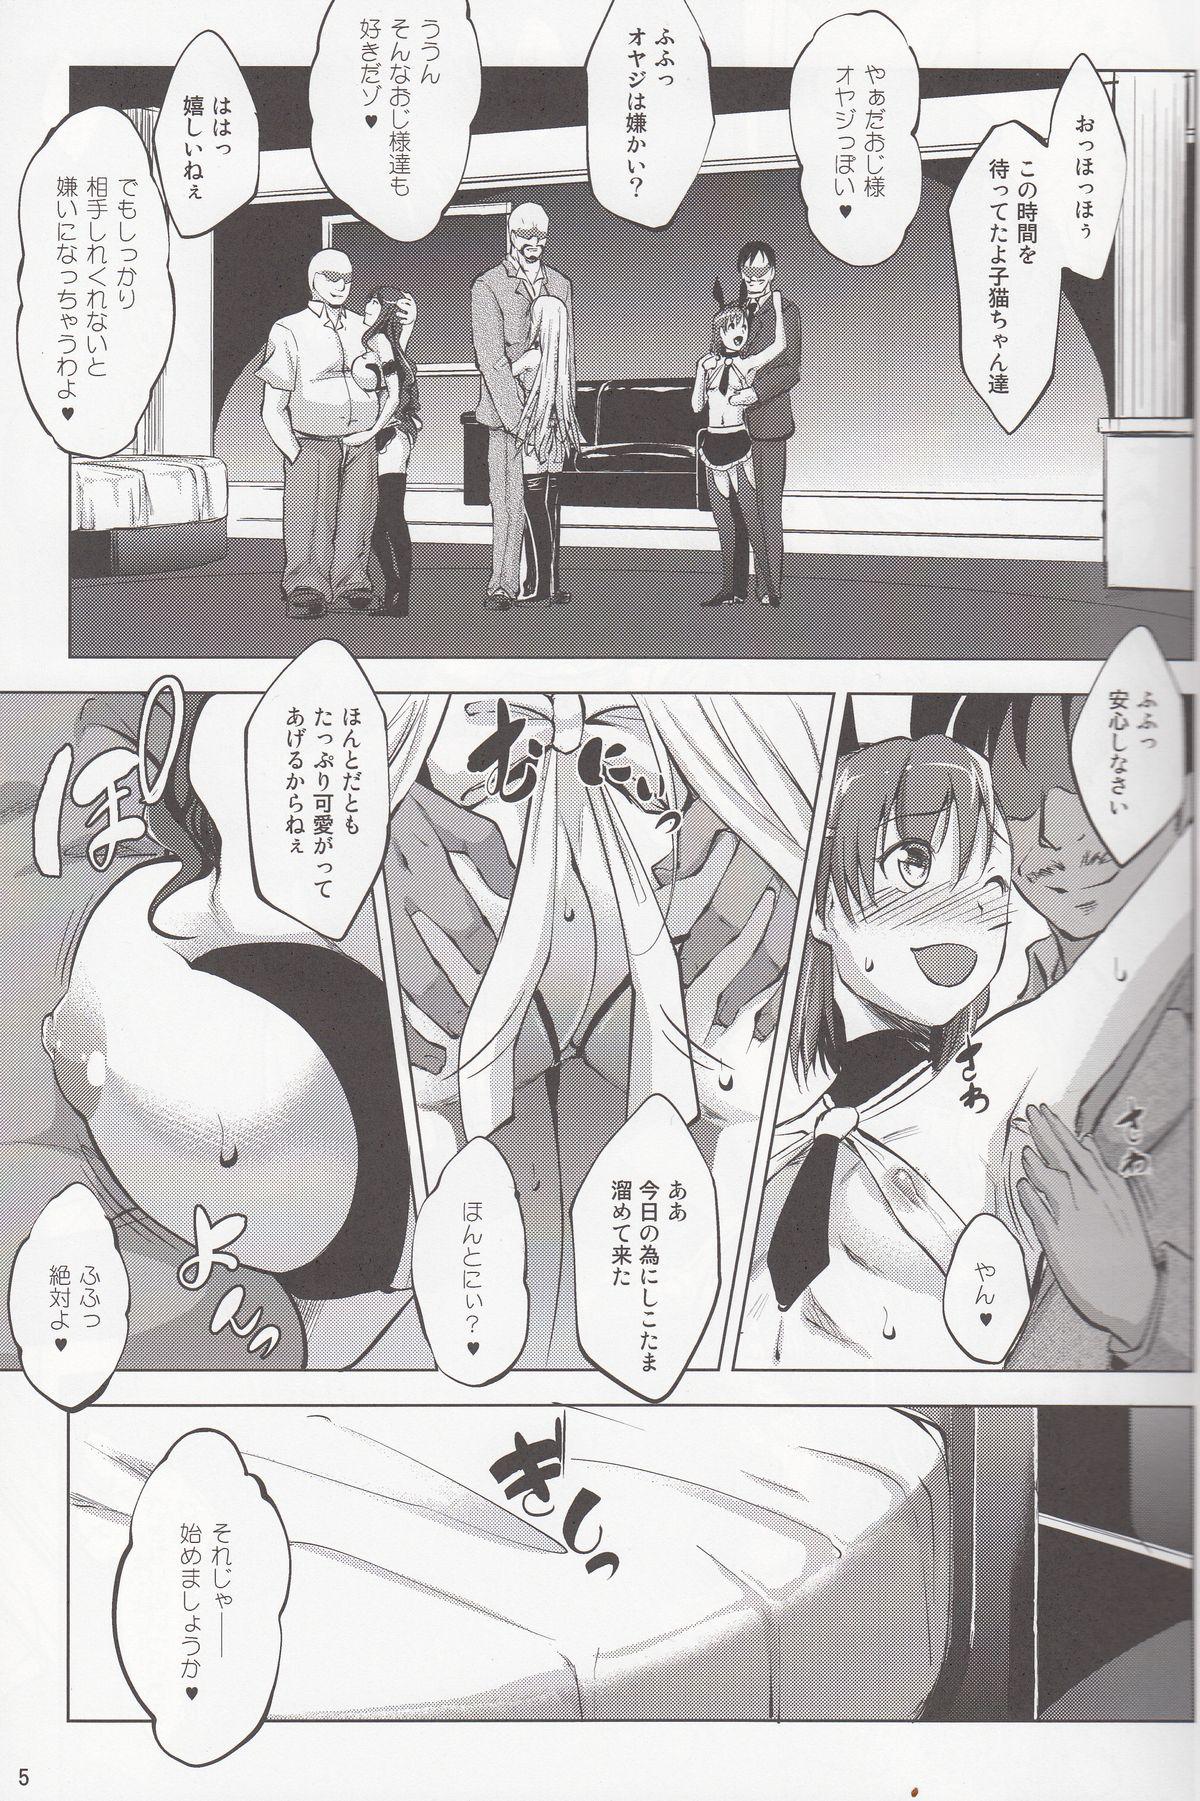 Olderwoman Toaru Himitsu no Chounouryokusha S - Toaru kagaku no railgun Toaru majutsu no index Cuckold - Page 4